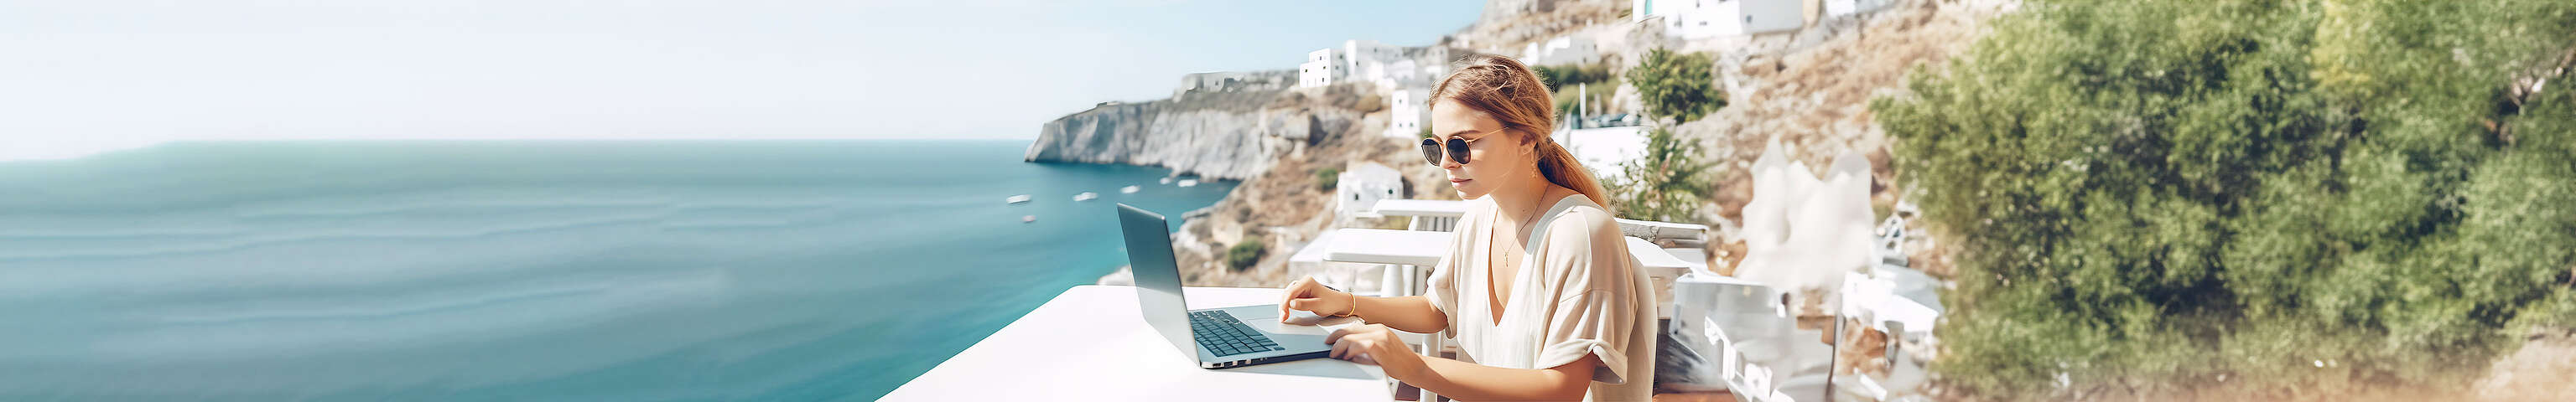 Frau sitzt mit ihrem Laptop draußen auf einer Terrasse, im Hintergrund sieht man das Meer 